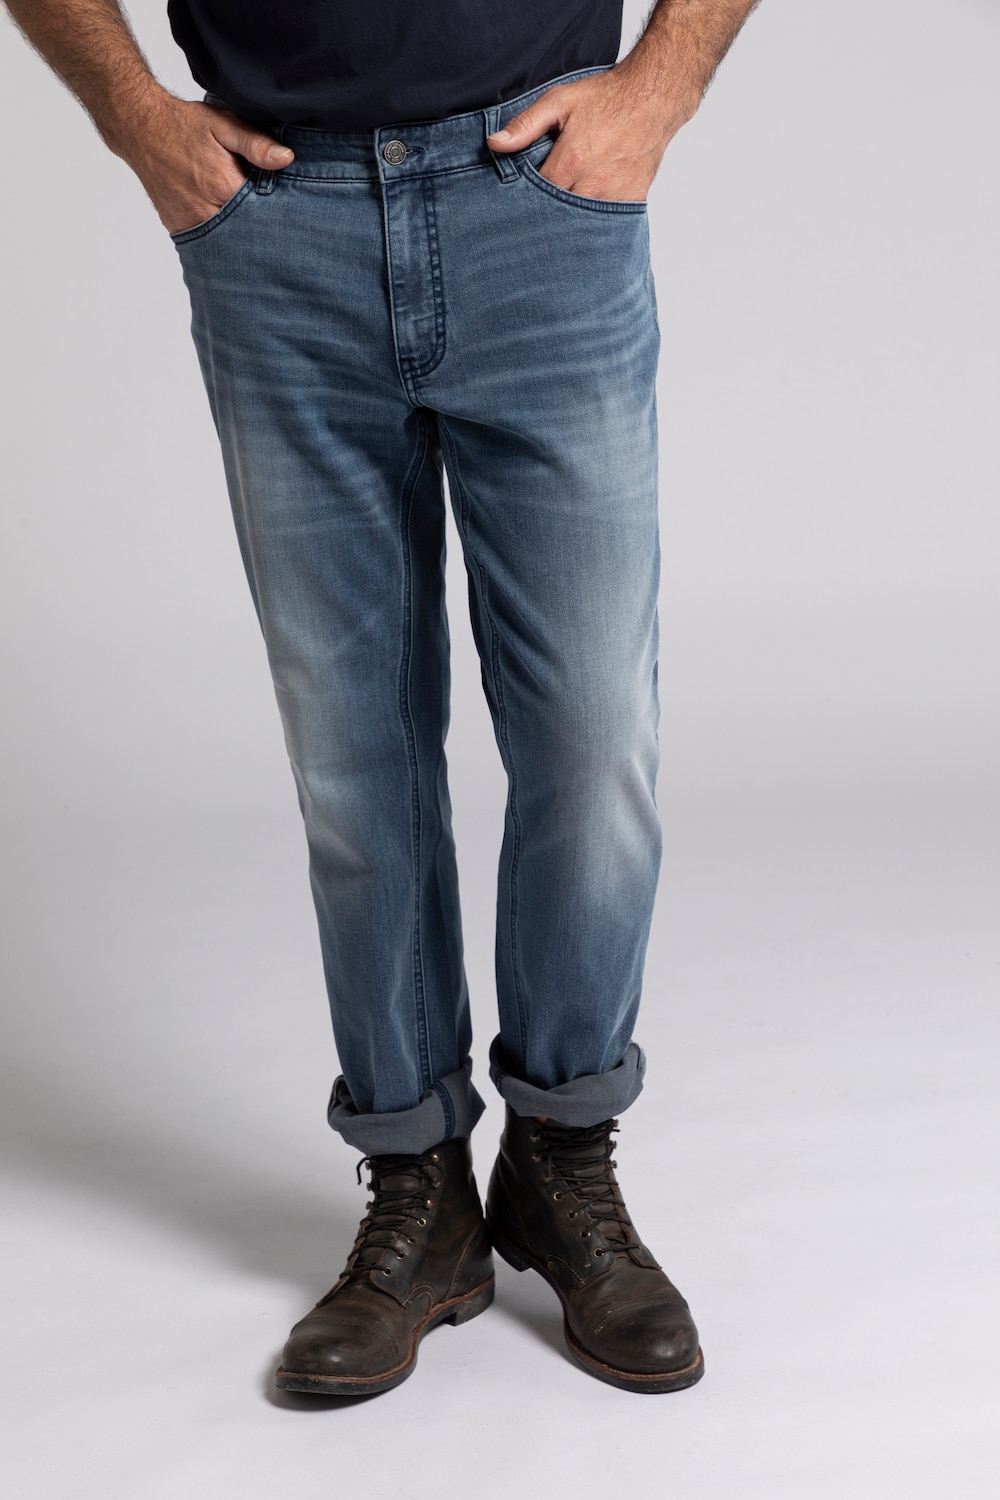 Grote Maten jeans, Heren, grijs, Maat: 56, Katoen/Polyester, JP1880